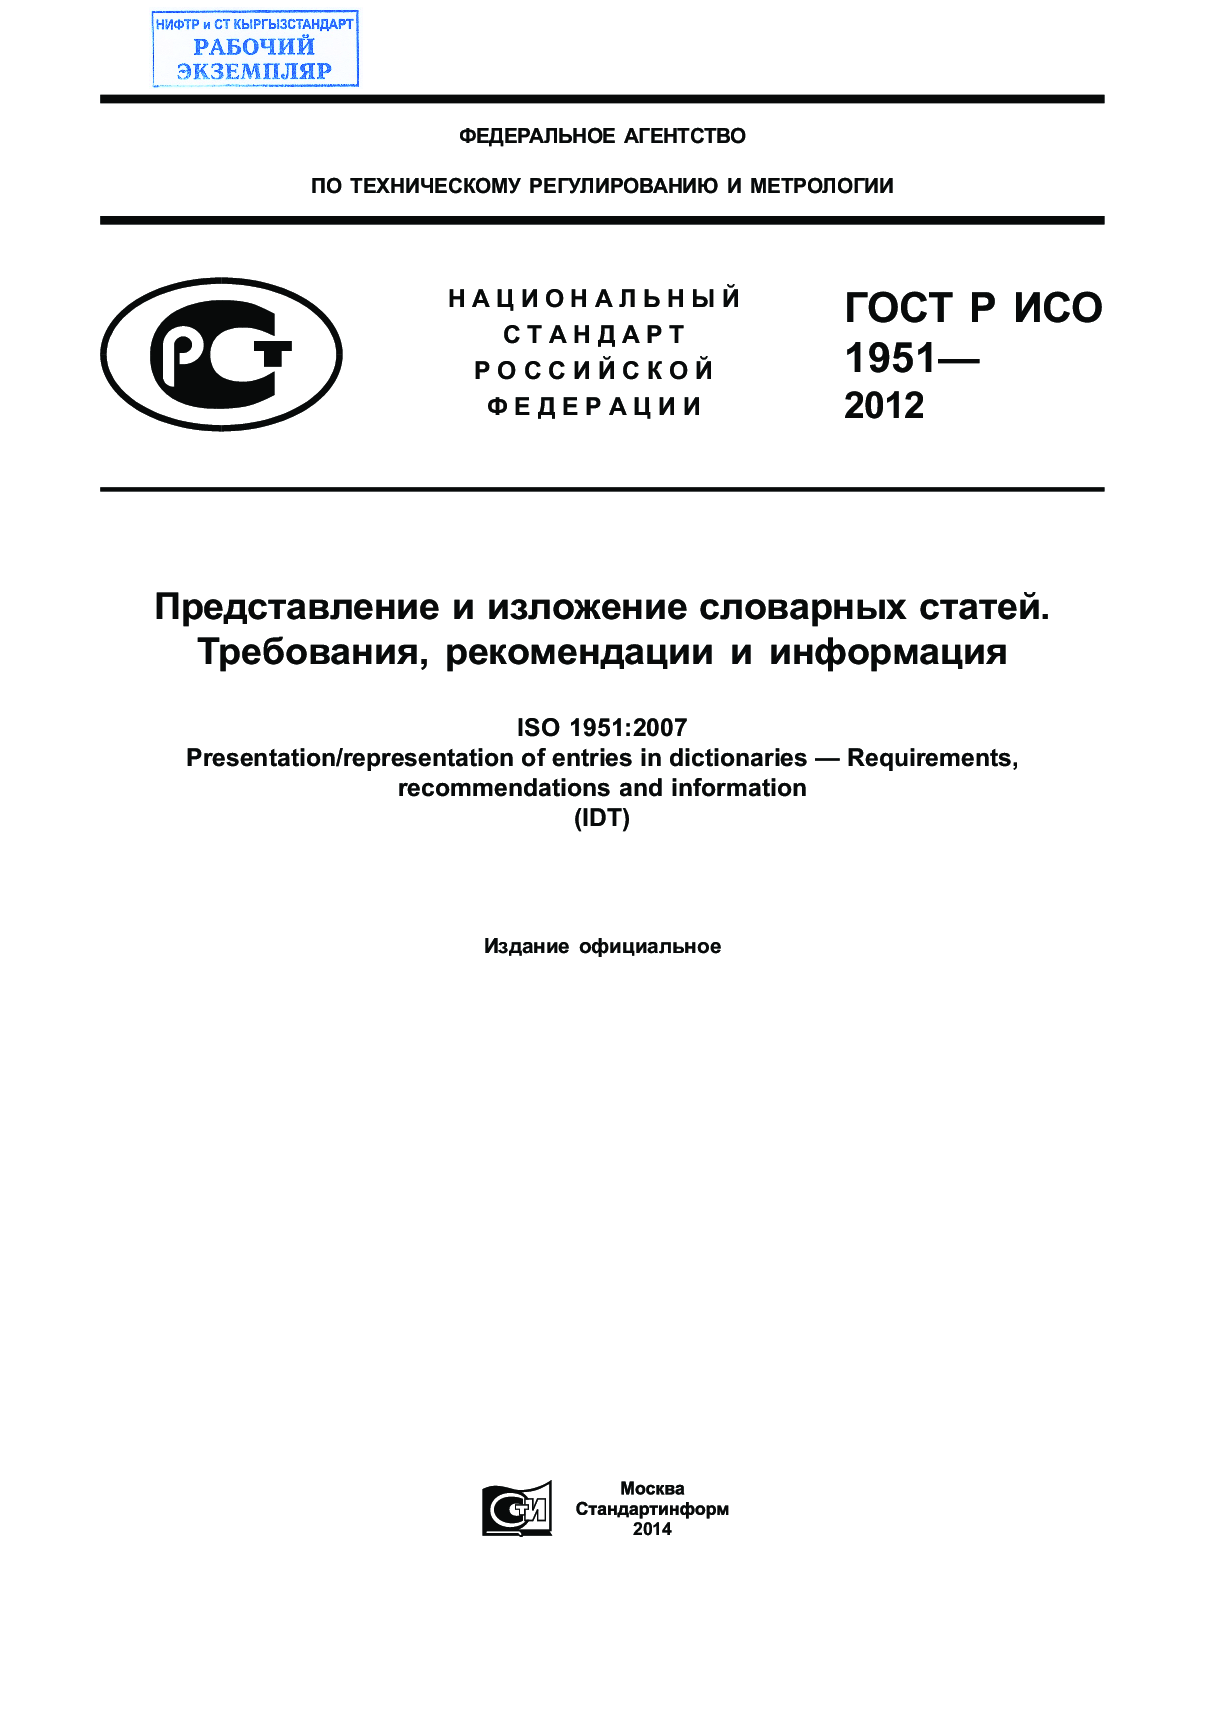 Представление и изложение словарных статей.  Требования, рекомендации и информация (ISO 1951:2007, IDT)